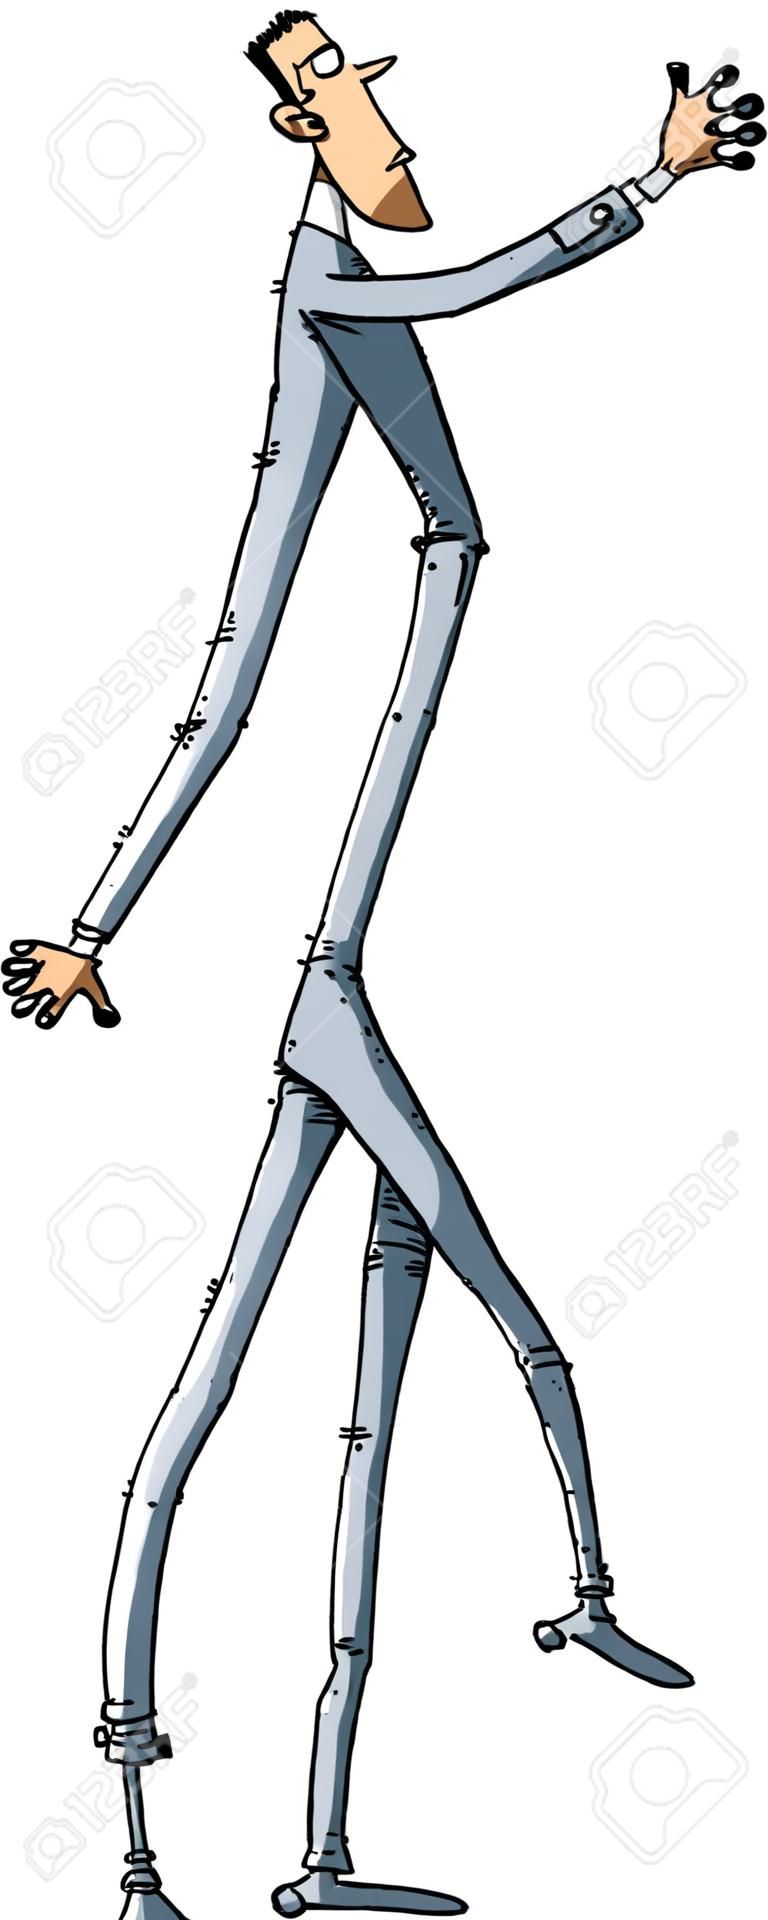 Cartoon człowiek z bardzo długimi nogami.